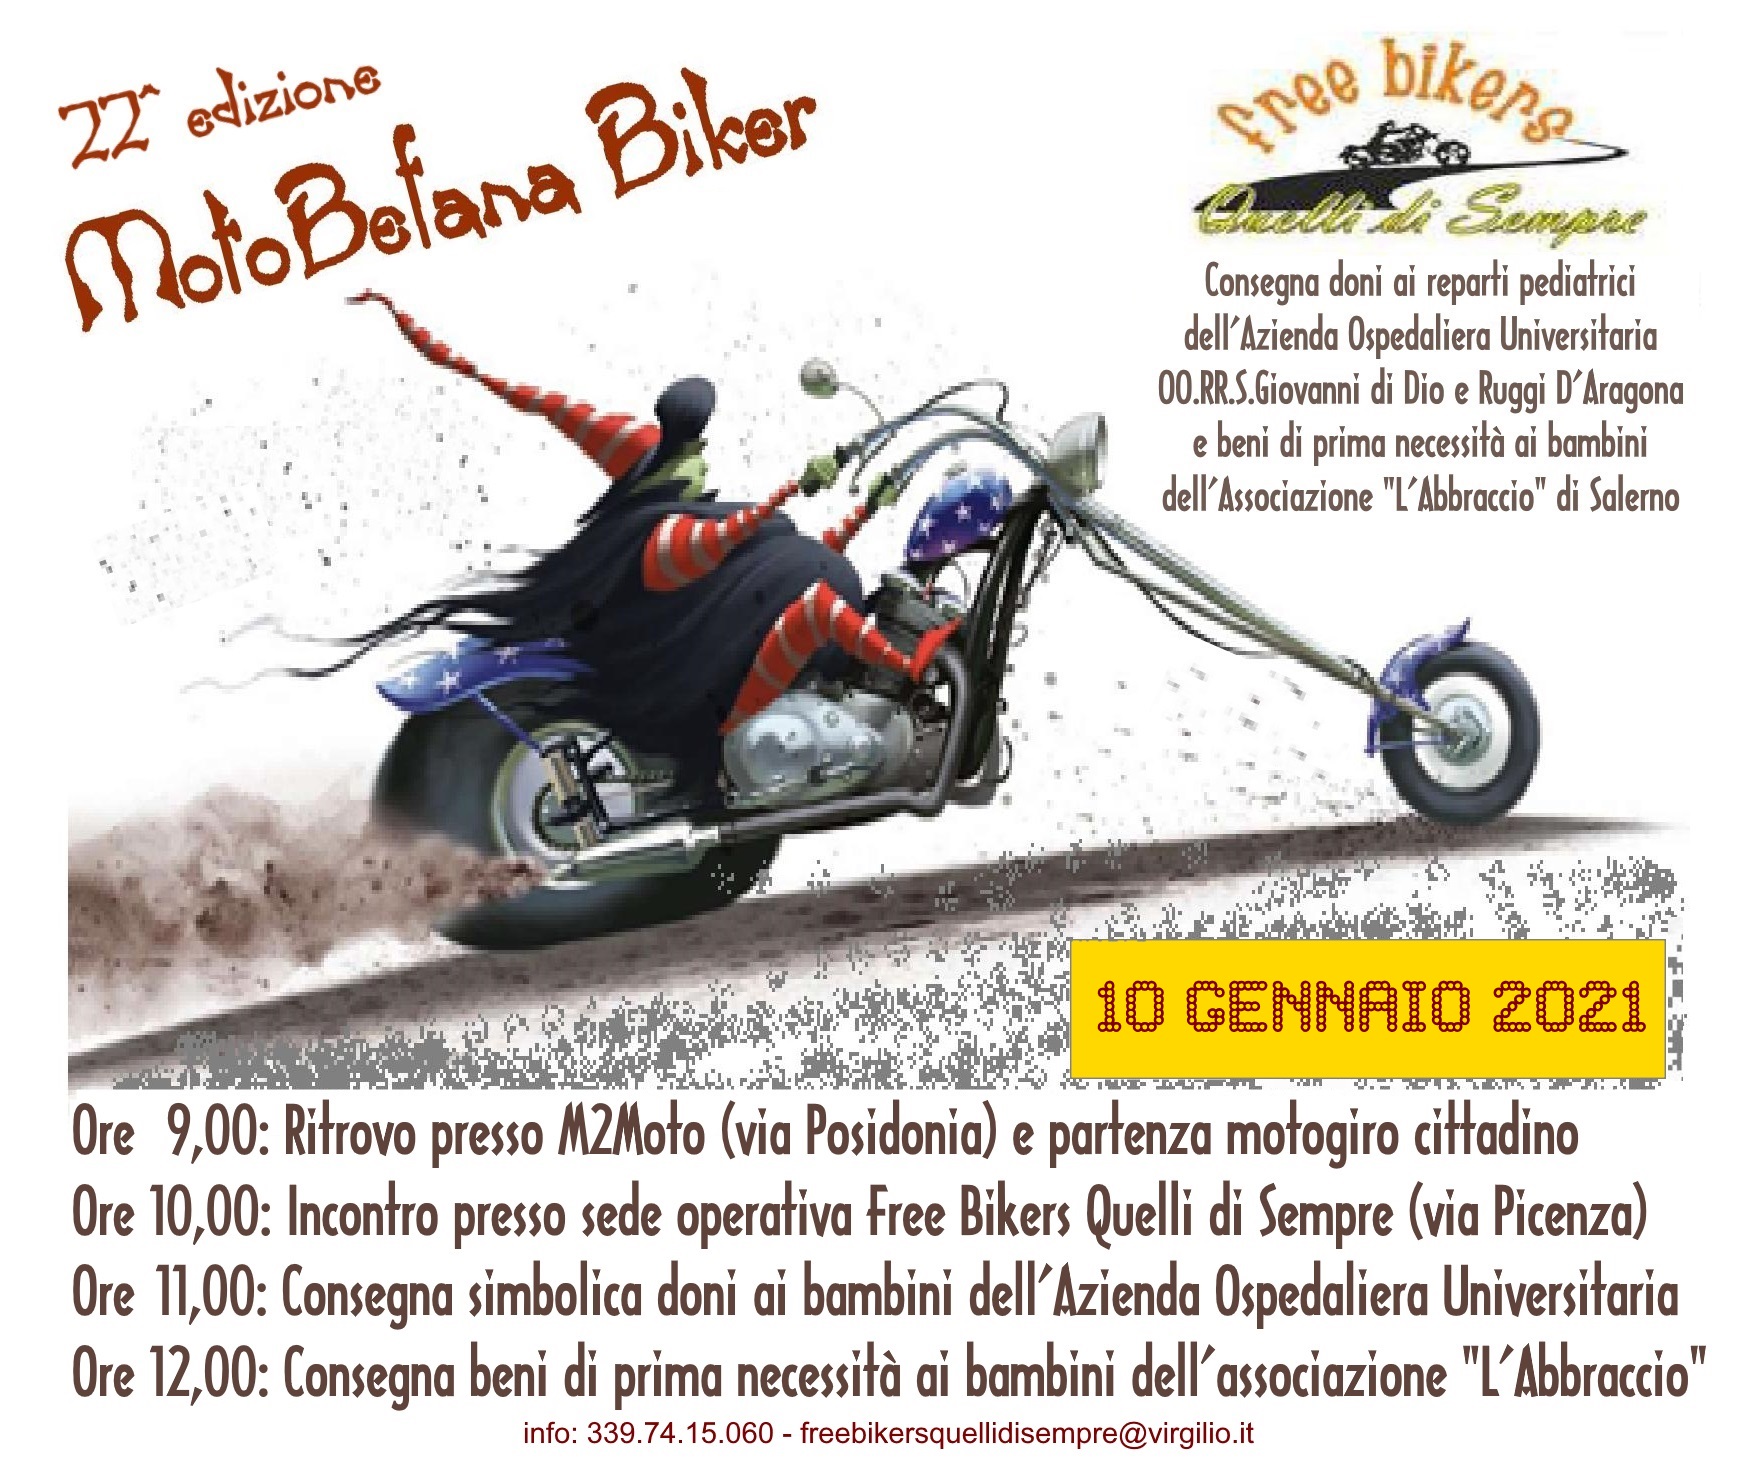 MotoBefana Biker 22^ edizione - La solidarietà corre sulle due ruote